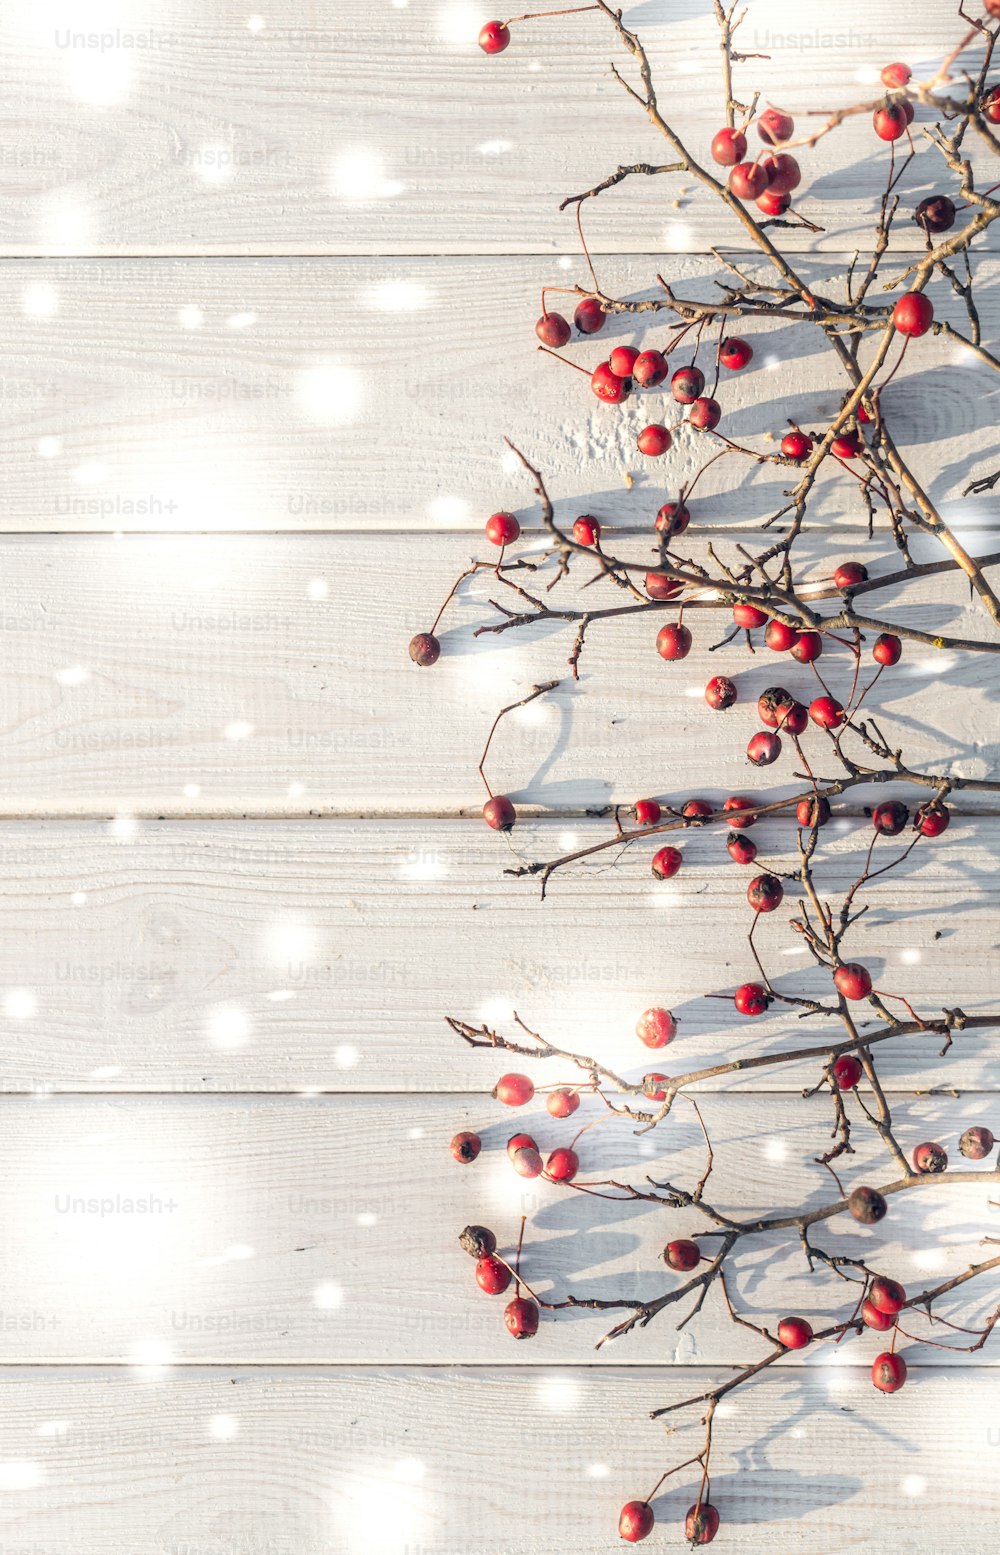 Fondo festivo de invierno. Las bayas rojas brillantes de las bayas maduras de espino sobre un fondo de elegantes tableros blancos. Fondo decorativo para tarjetas de felicitación de Navidad y Año Nuevo